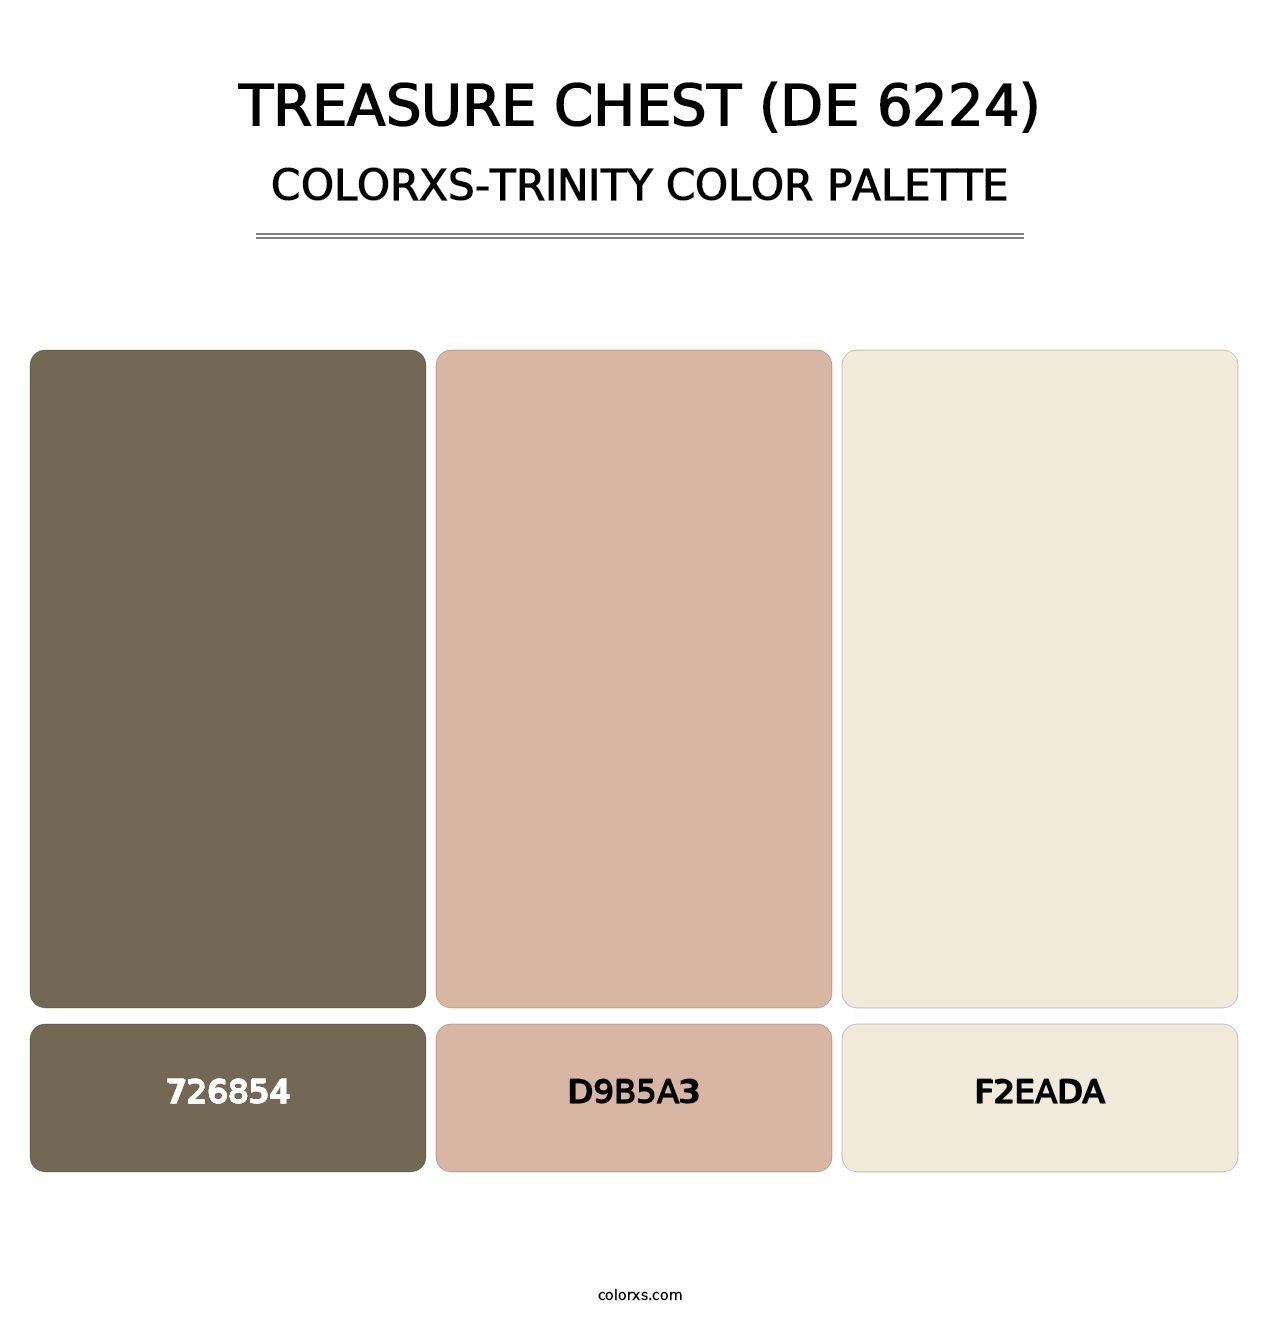 Treasure Chest (DE 6224) - Colorxs Trinity Palette